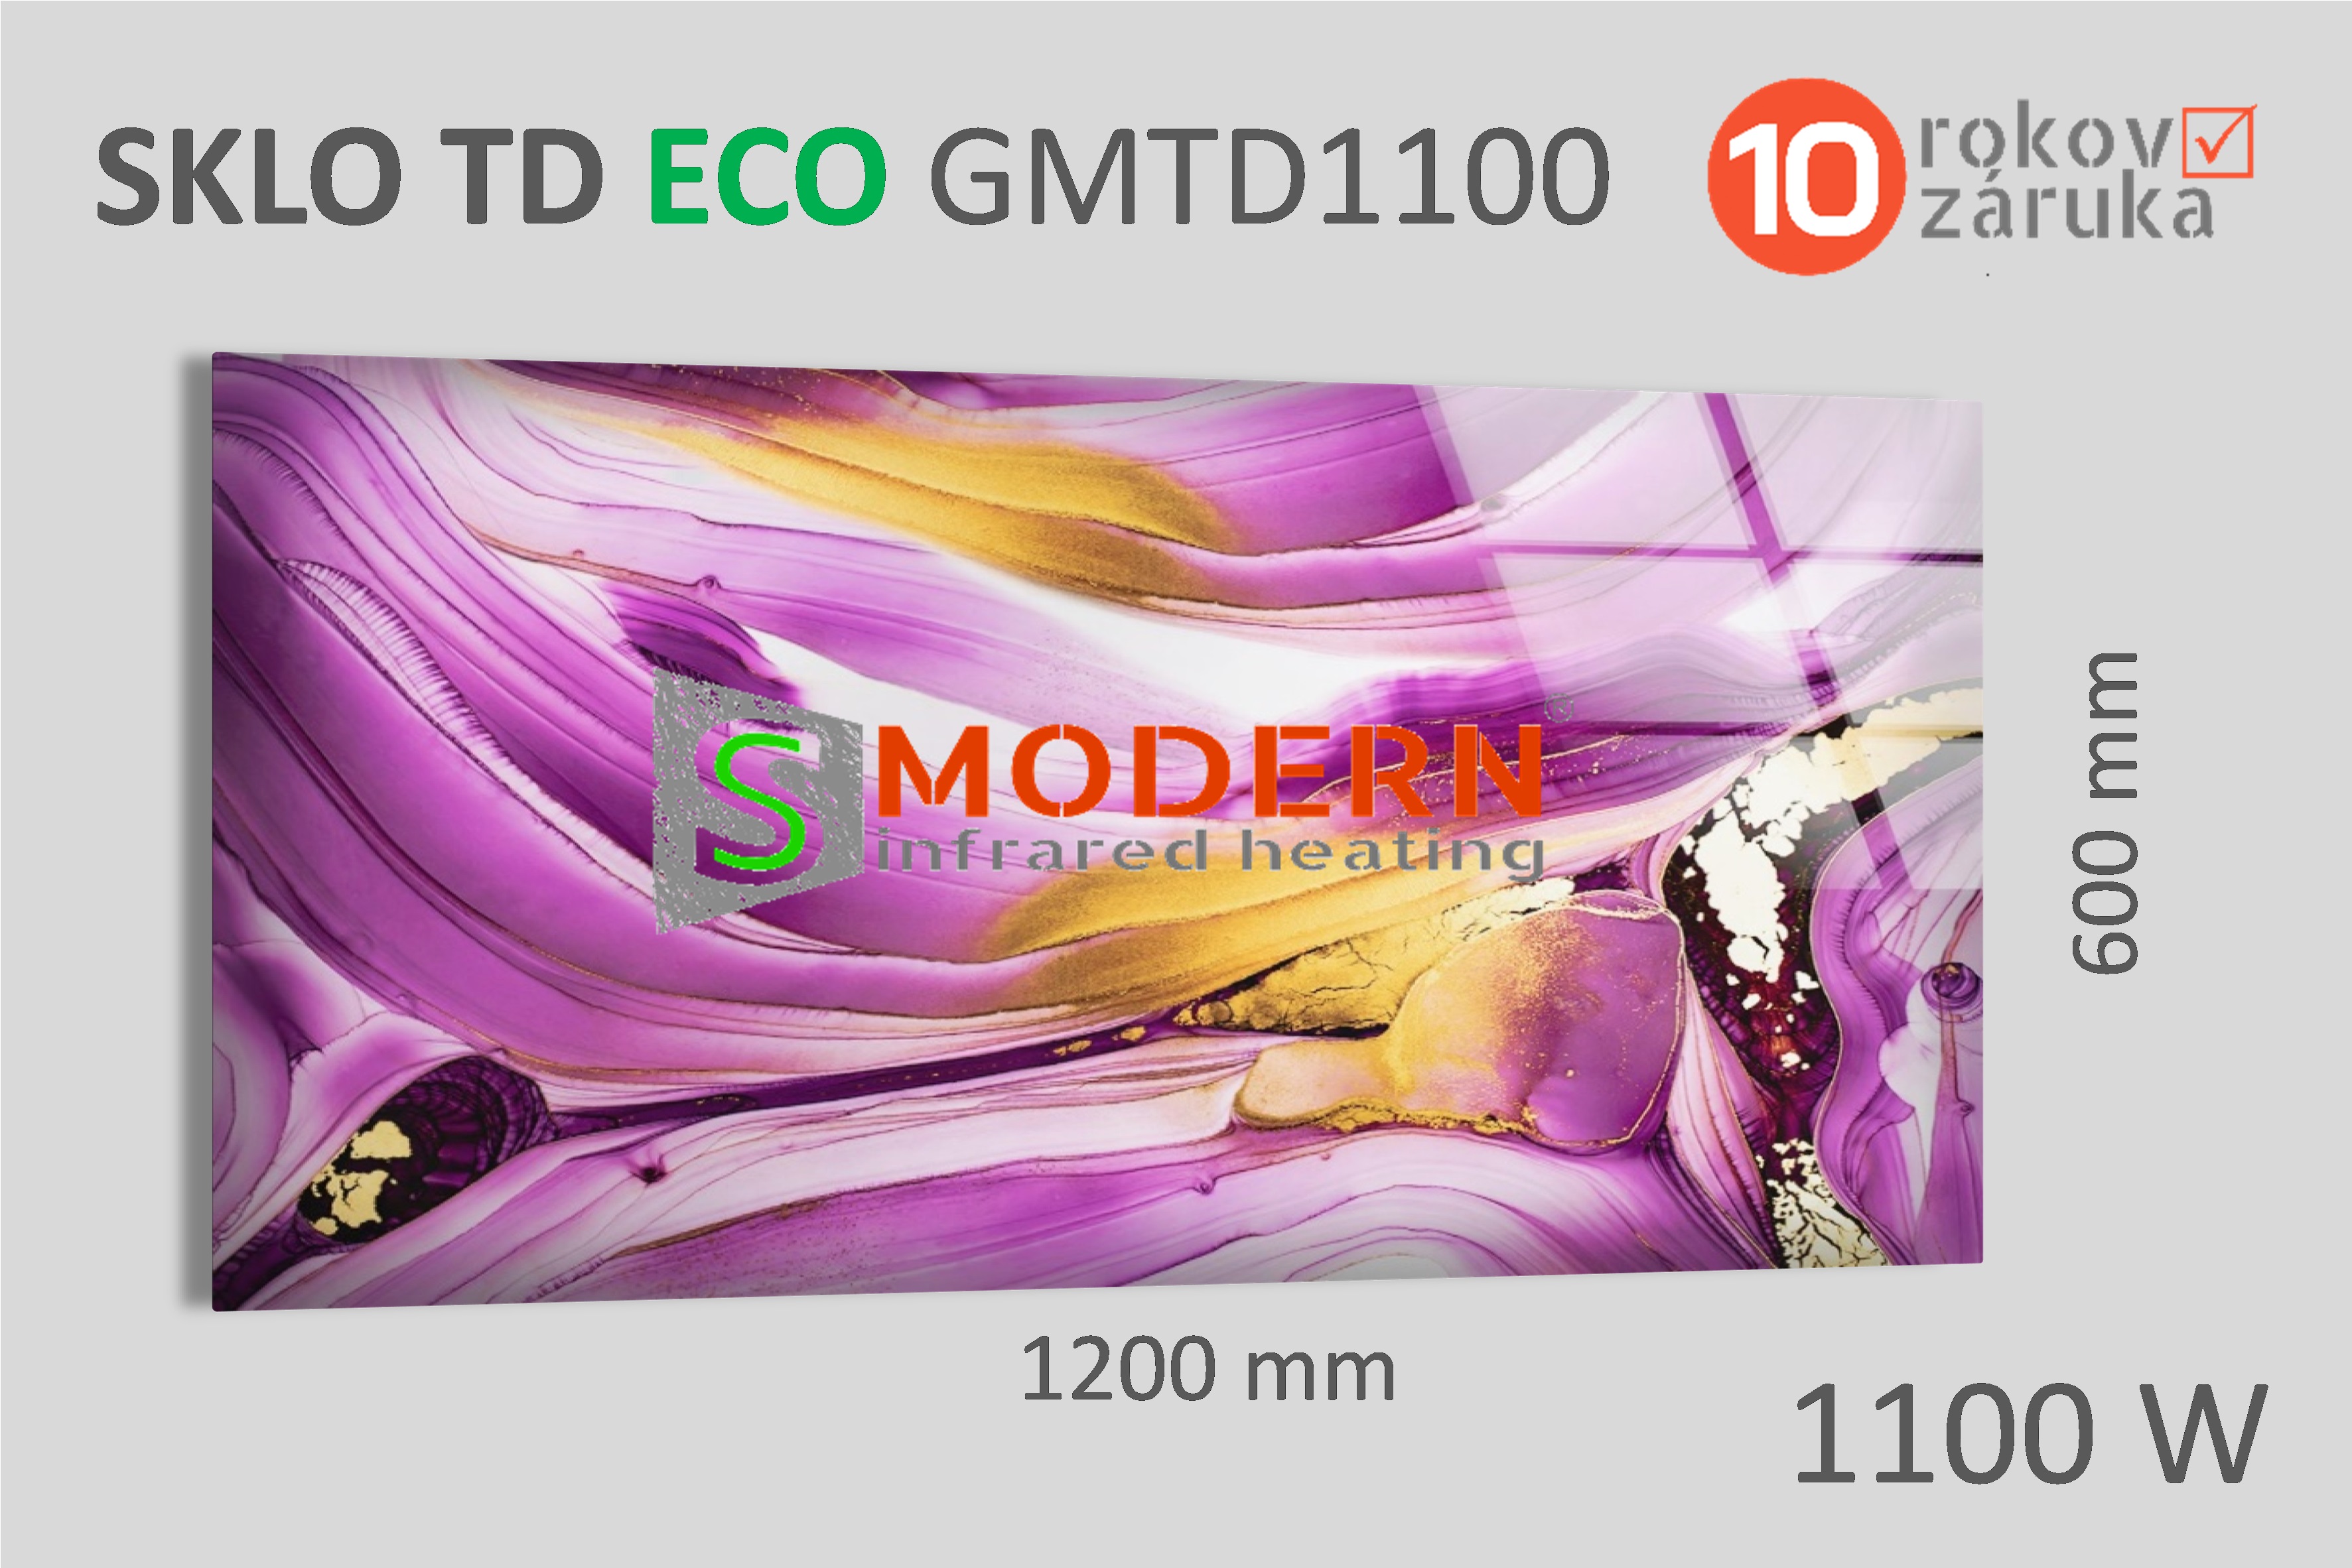 Sklenený infrapanel SMODERN® TD ECO GWTD1100 / 1100 W, obrazový